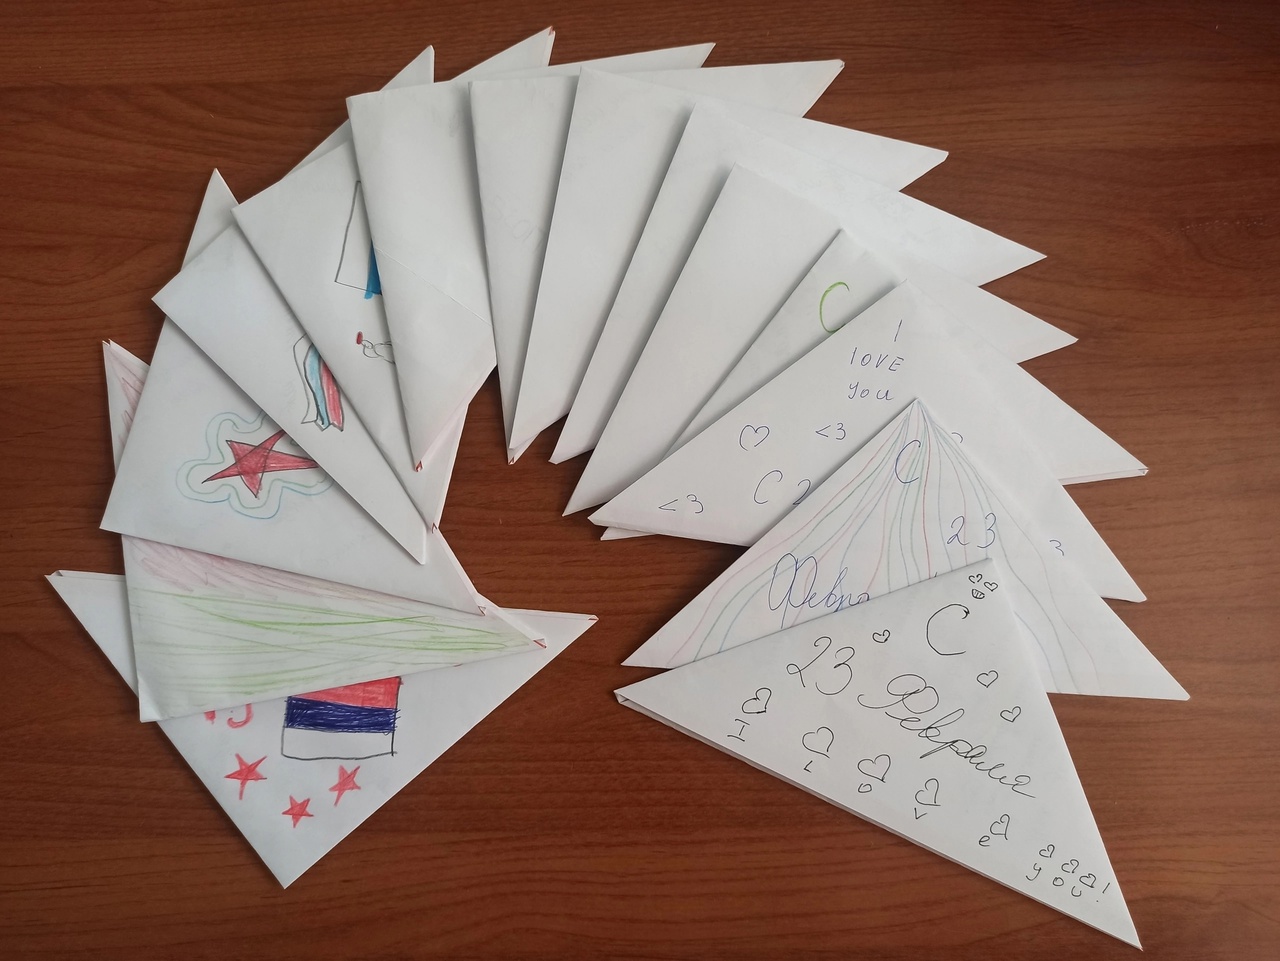 Ребята из Кузнечихинской школы Ярославского района написали письма с добрыми пожеланиями бойцам СВО